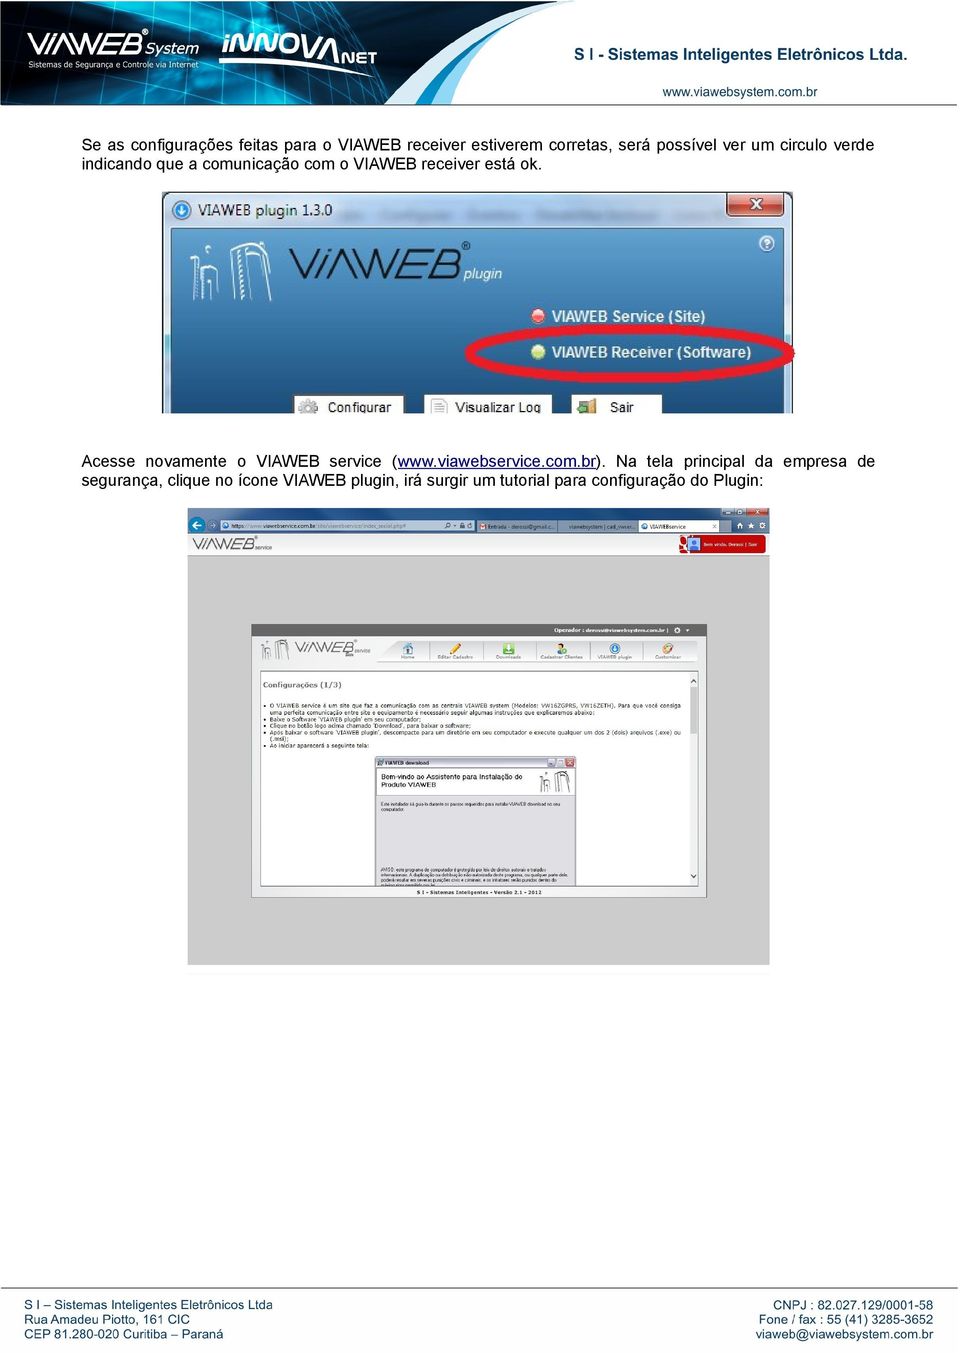 Acesse novamente o VIAWEB service (www.viawebservice.com.br).